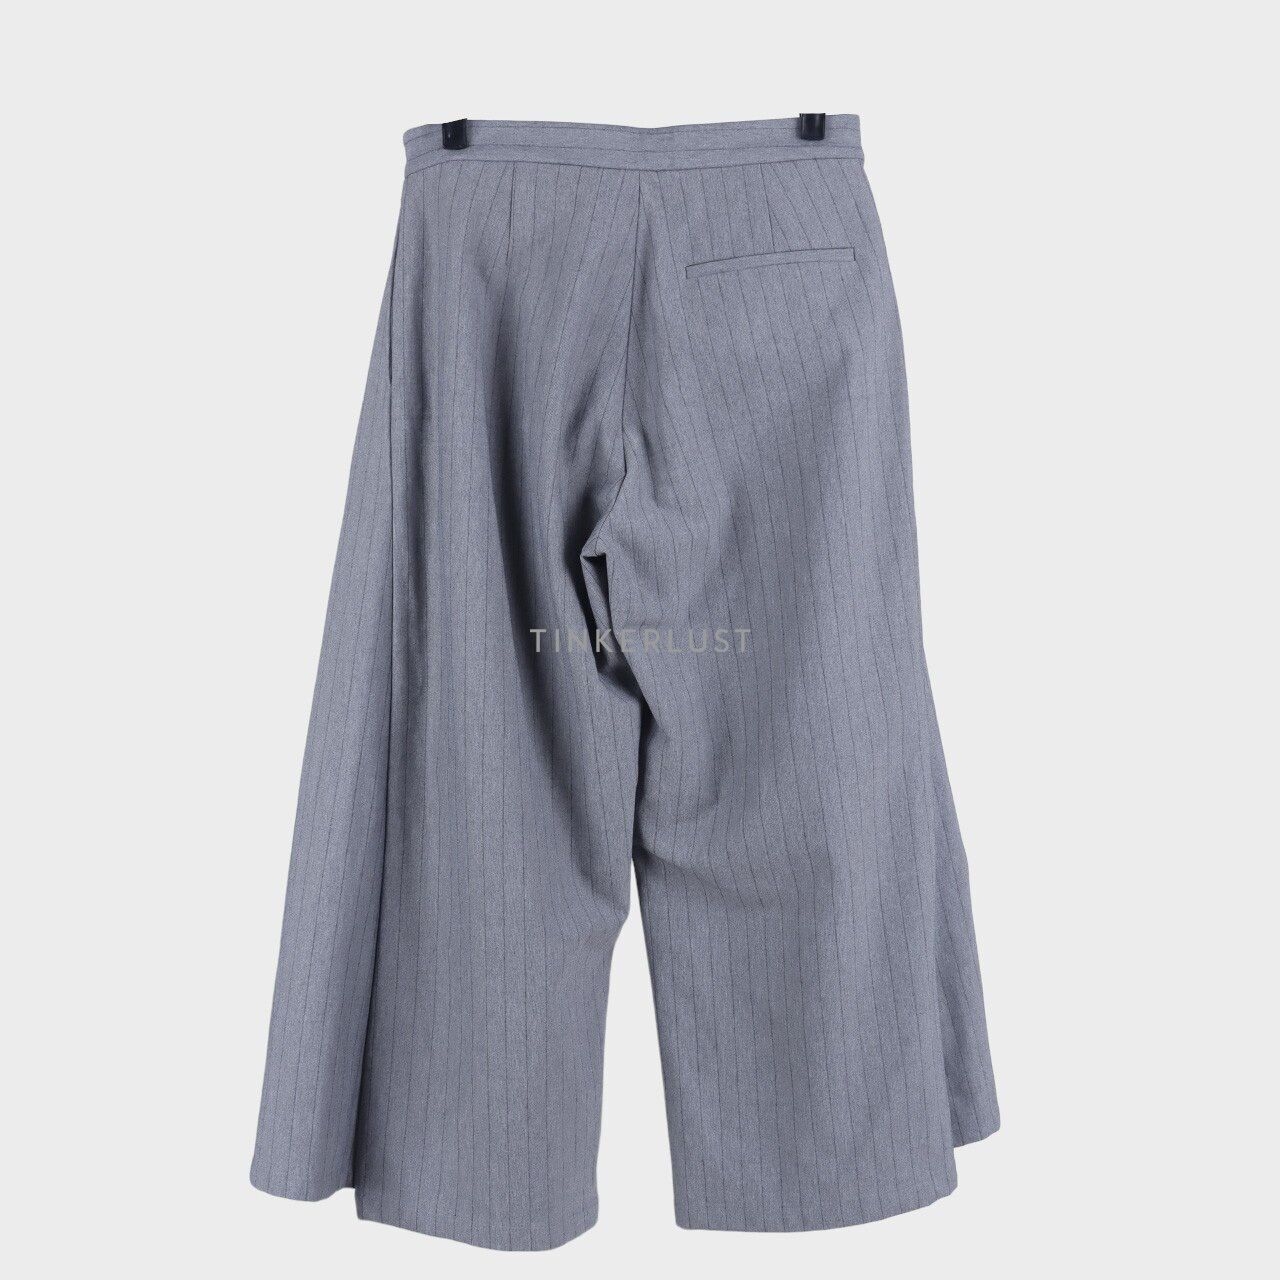 Danjyo Hiyoji Grey Stripes Long Pants